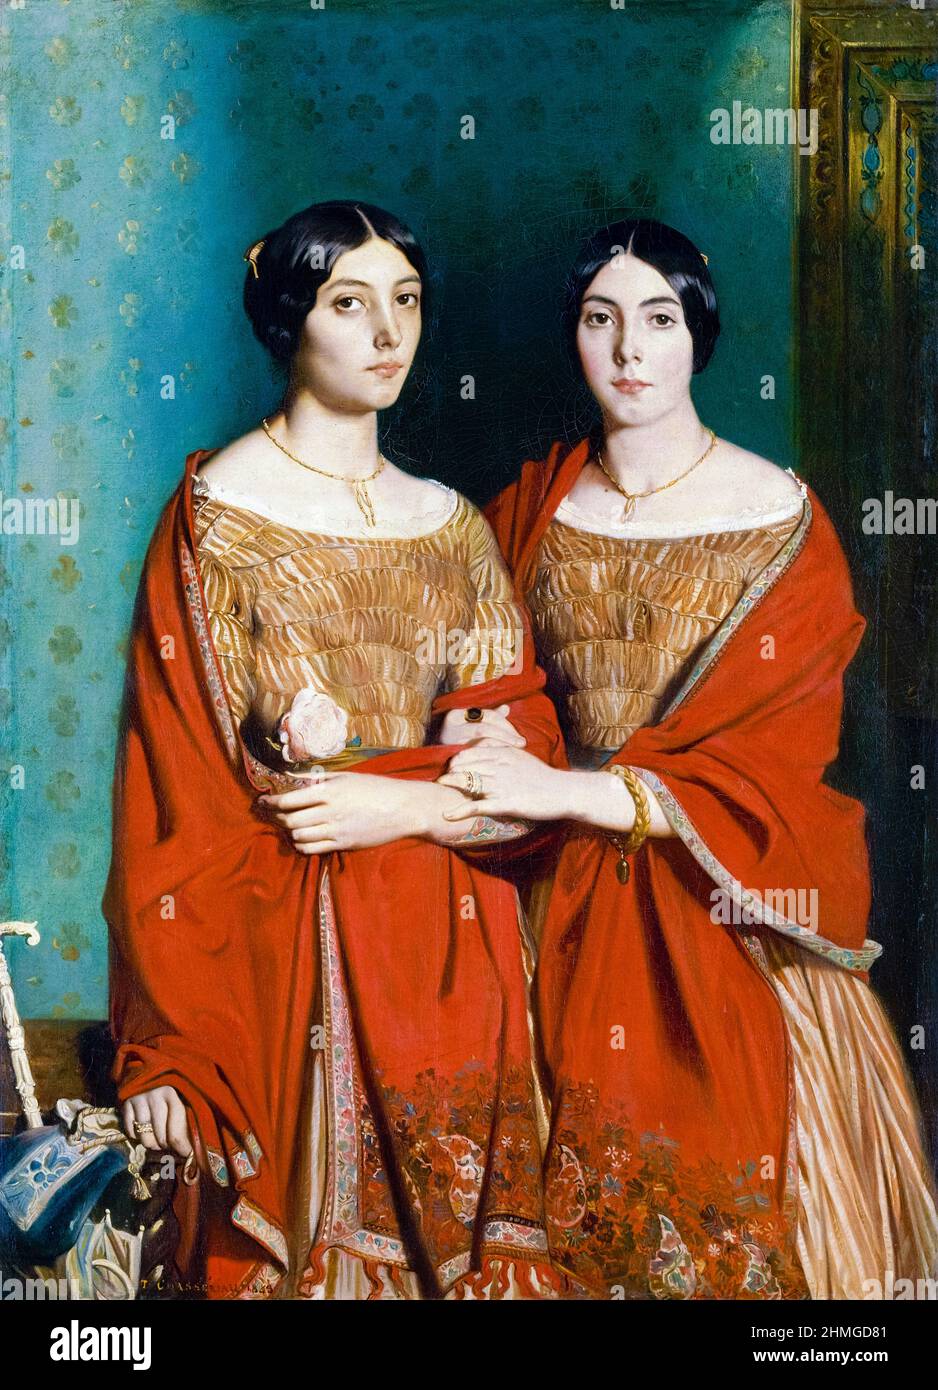 Les deux sœurs [les deux Sœurs] par le peintre romantique français Théodore Chasseriau (1819-1856) portrait de ses sœurs Adèle et Aline Chasseriau peint en 1843. Banque D'Images